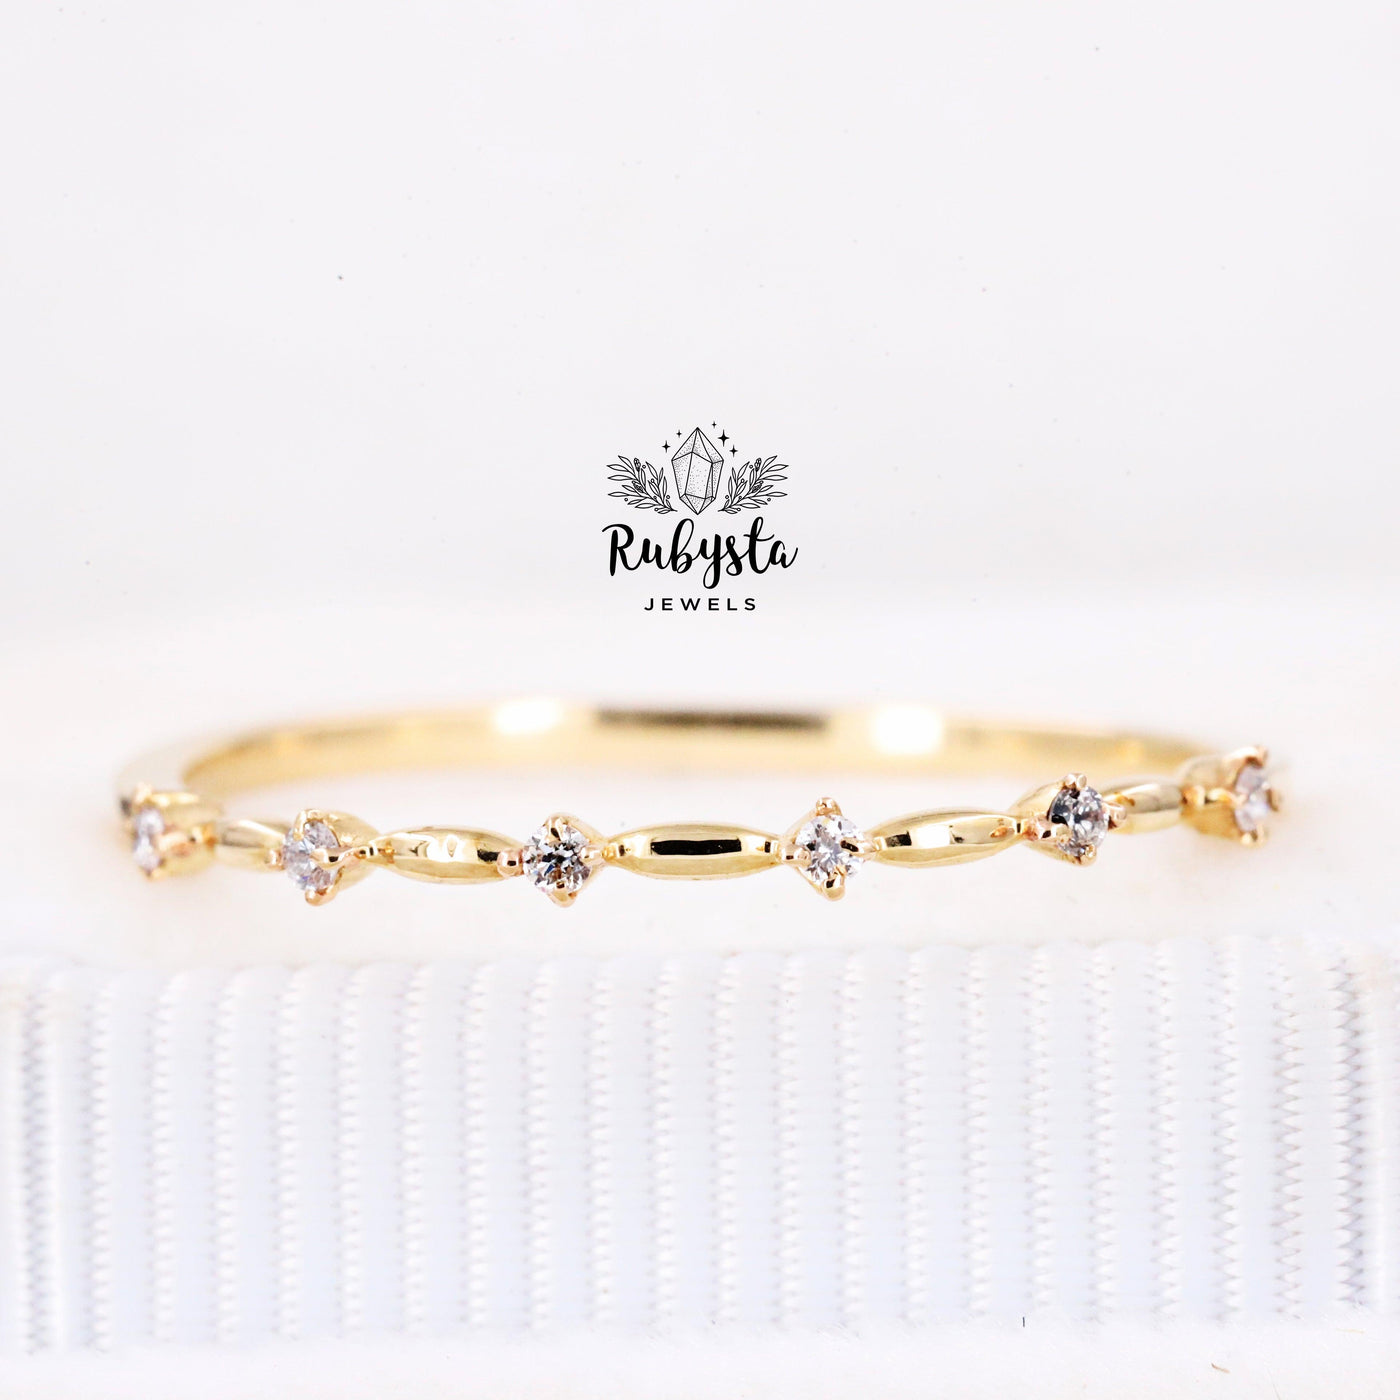 Gold Wedding Ring | Diamond Band | Half Eternity Ring | Diamond Ring - Rubysta